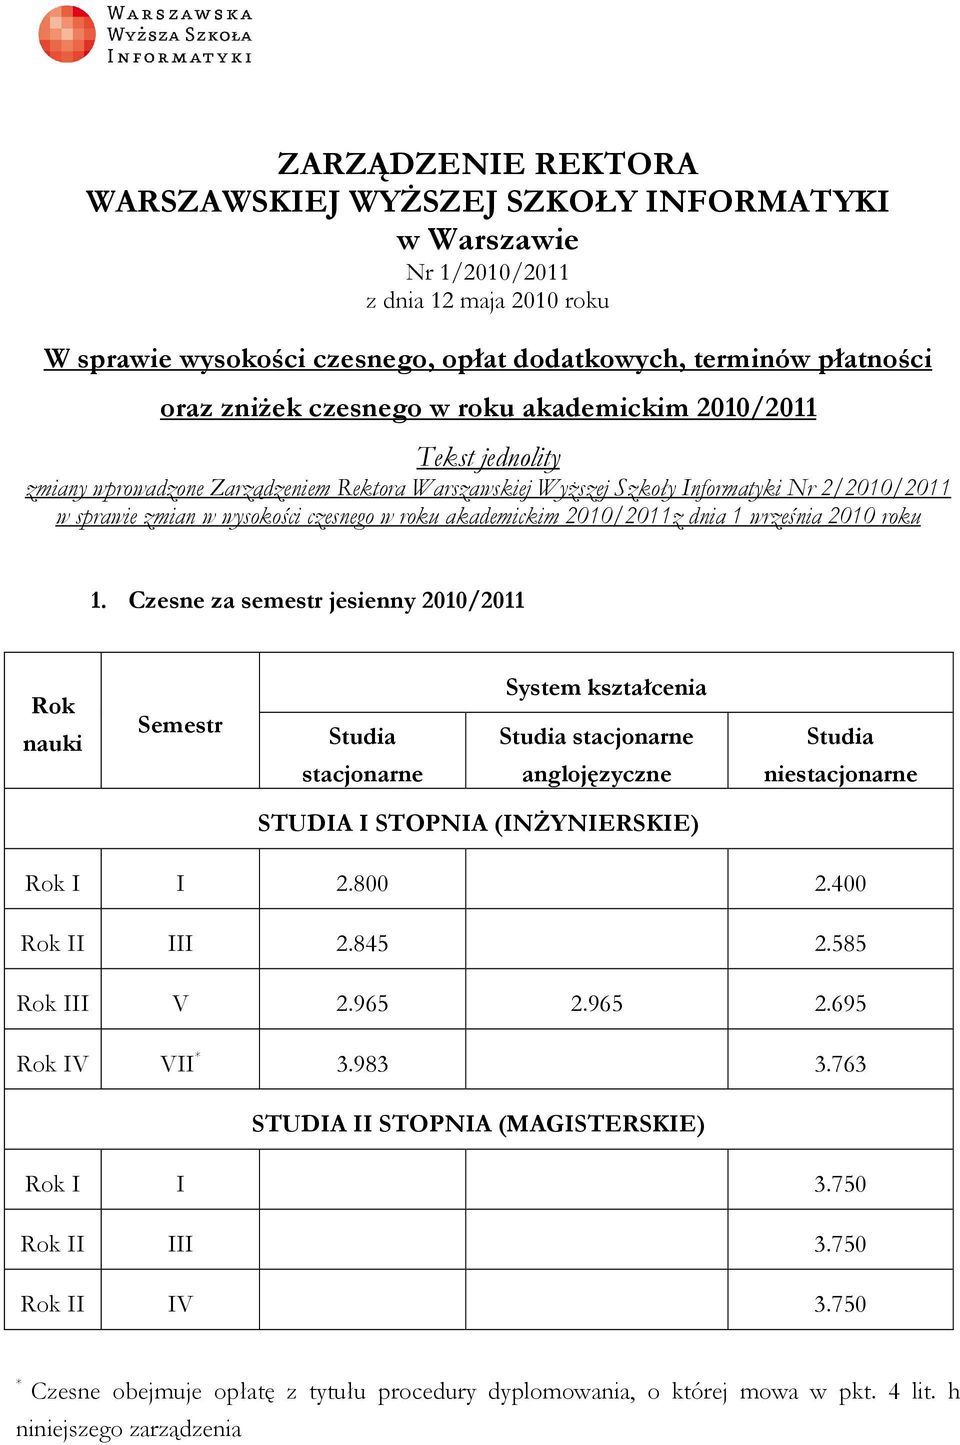 akademickim 2010/2011z dnia 1 września 2010 roku 1. Czesne za semestr jesienny 2010/2011 stacjonarne stacjonarne anglojęzyczne STUDIA I STOPNIA (INŻYNIERSKIE) I I 2.800 2.400 II III 2.845 2.